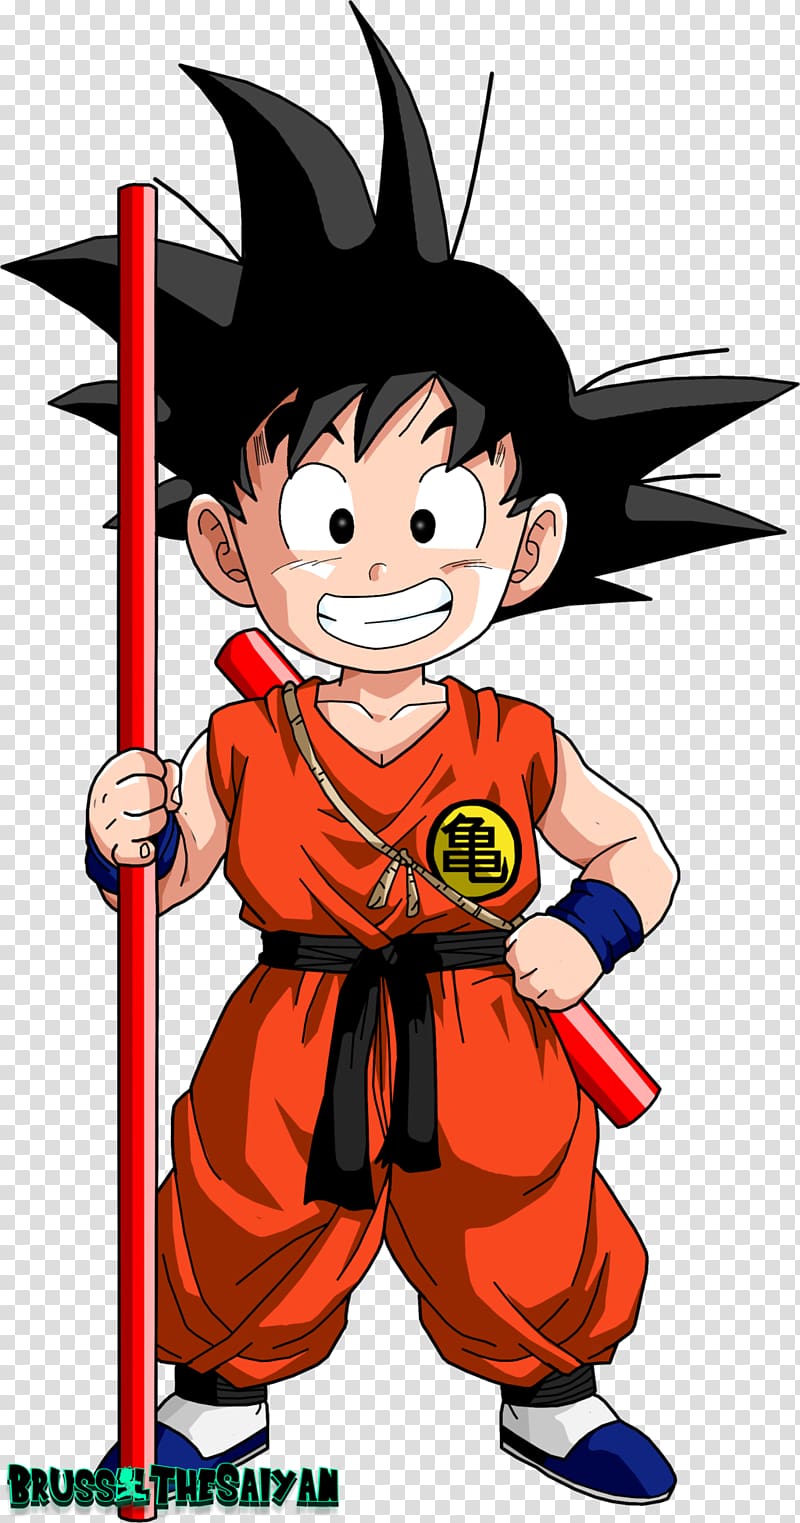 Goku Gohan Tien Shinhan Chi-Chi Mr. Satan, goku transparent background PNG clipart